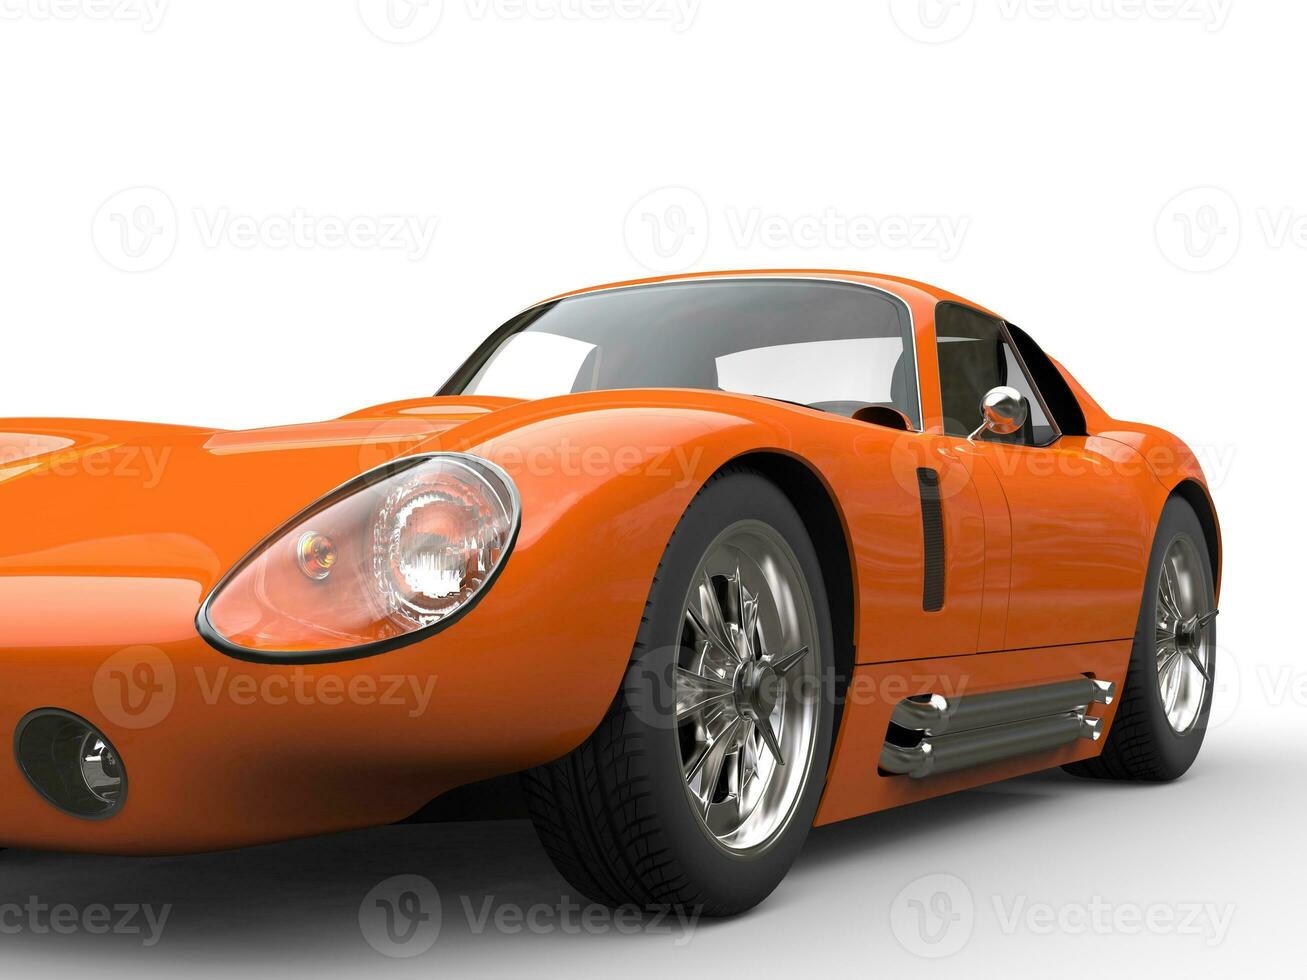 brilhante laranja vintage Esportes carro - Farol extremo fechar-se tiro foto